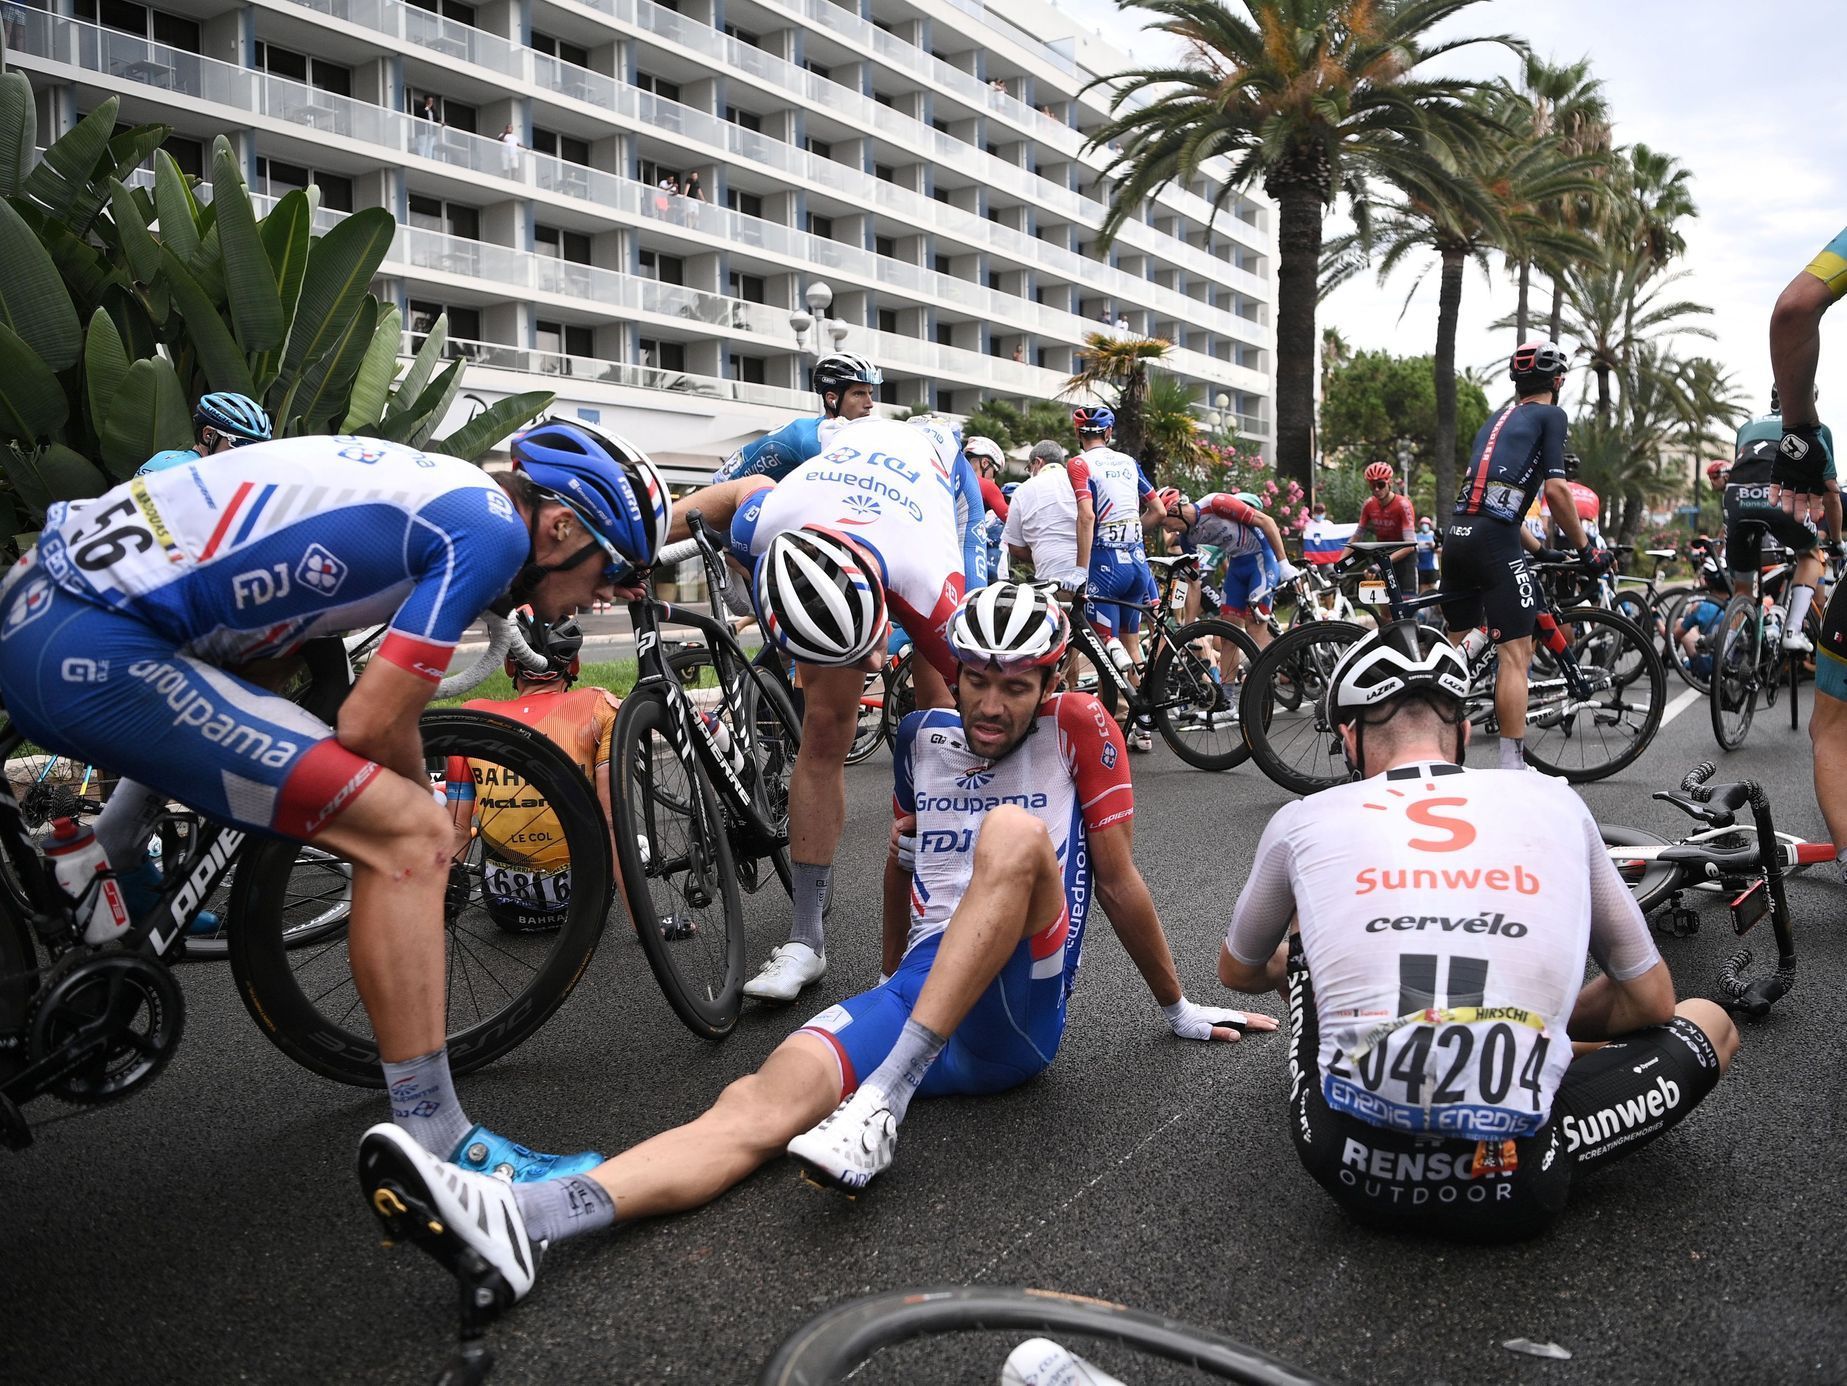 Tour de France 2020, hromadný pád v první etapě